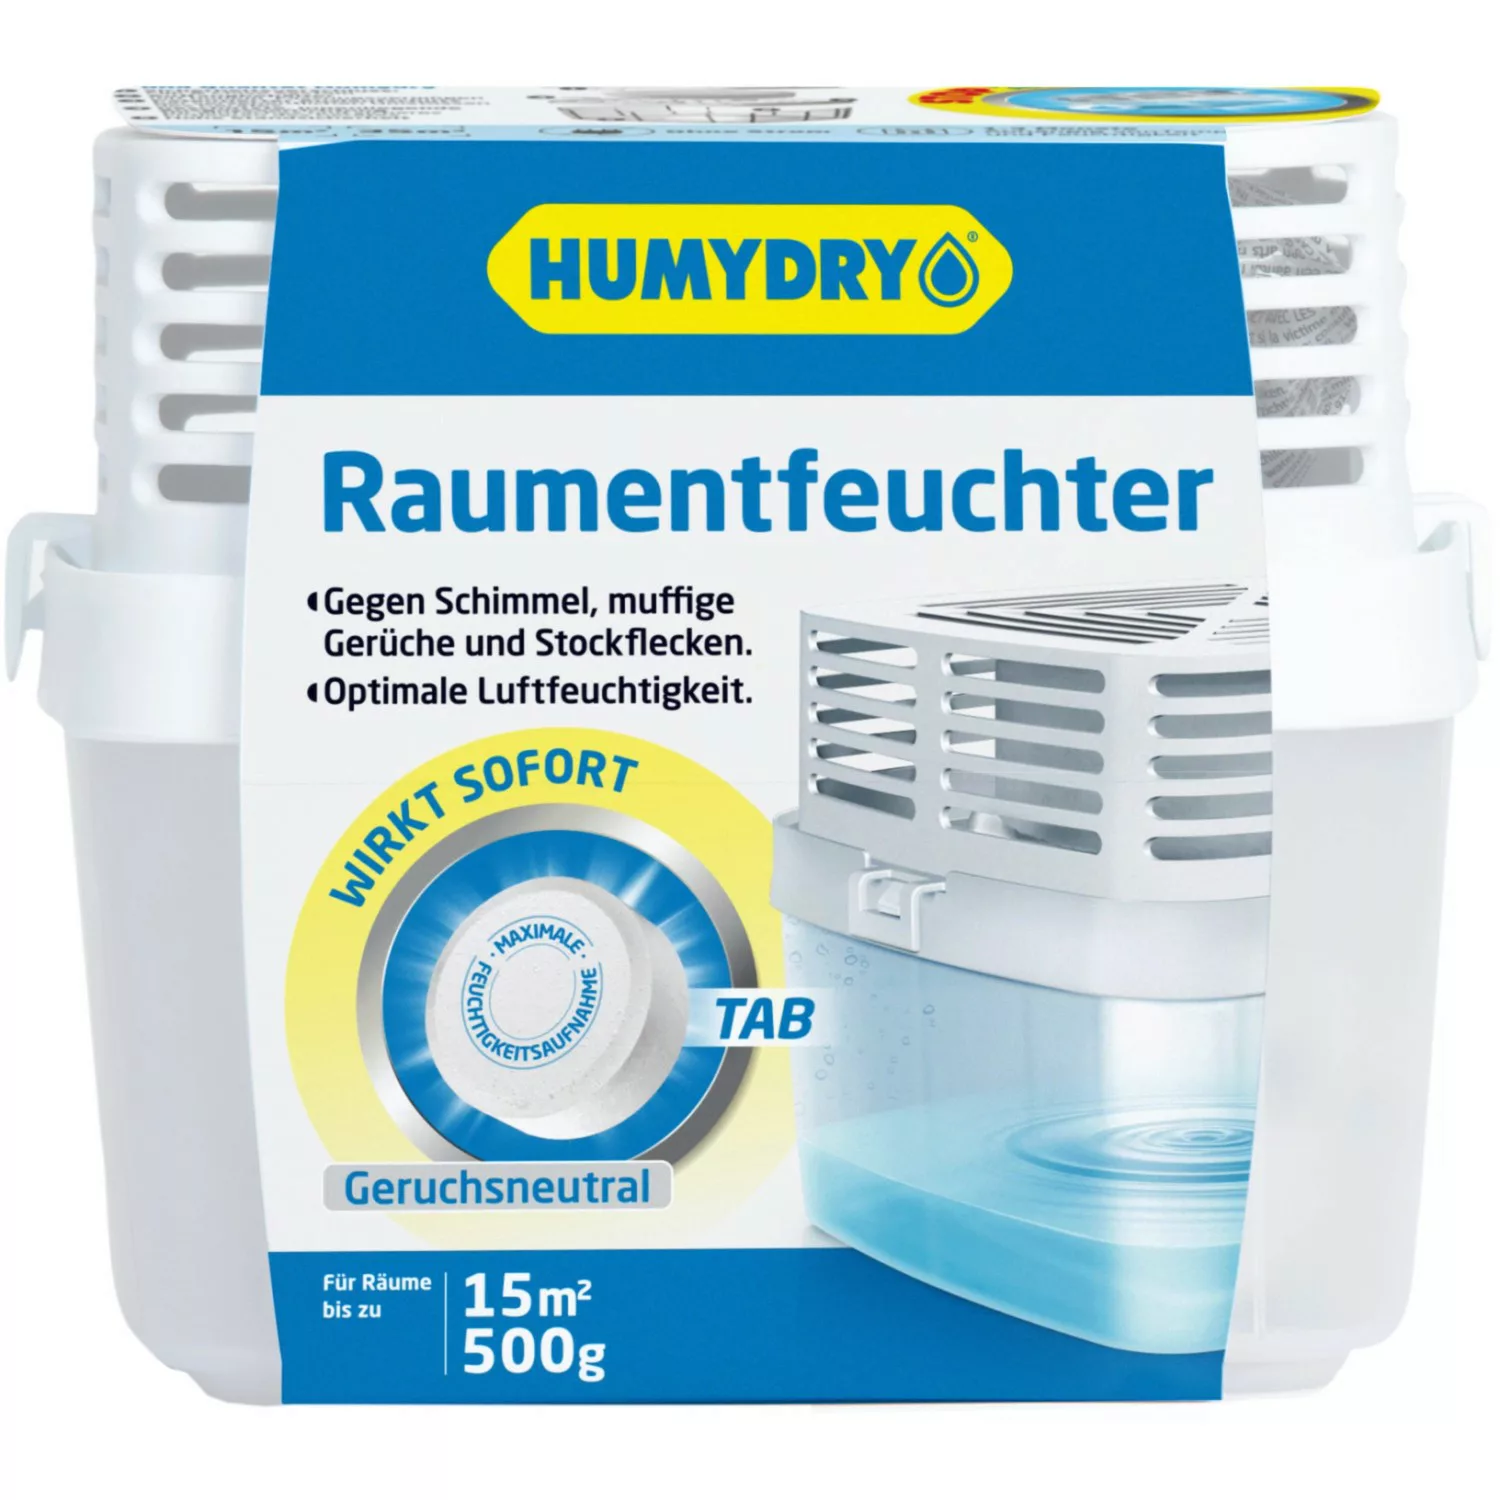 Humidry Premium 500 Raumentfeuchter Neutral mit Nachfülltab 1 x 500 g günstig online kaufen